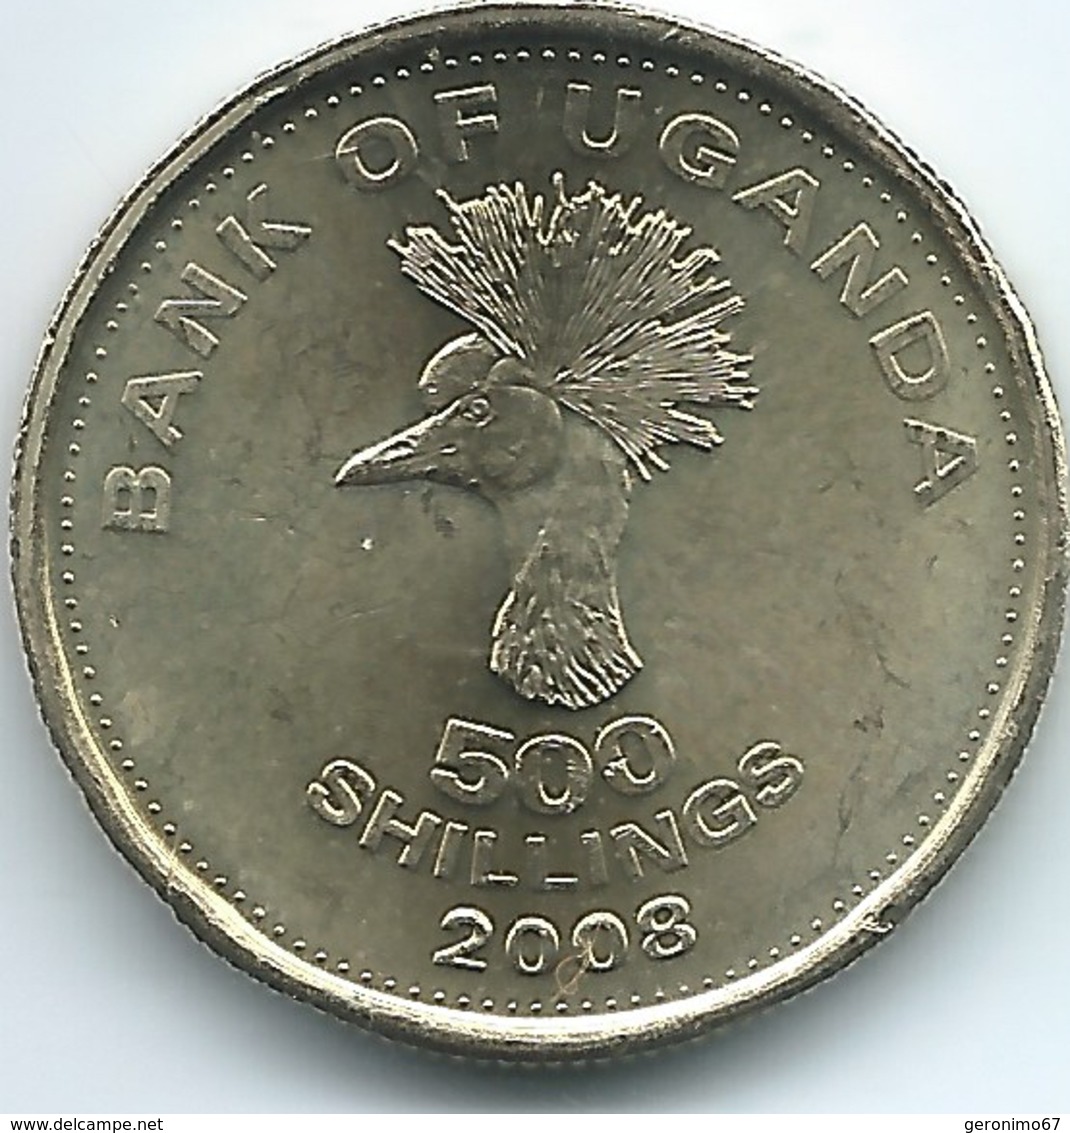 Uganda - 2008 - 500 Shillings - KM69 - Uganda